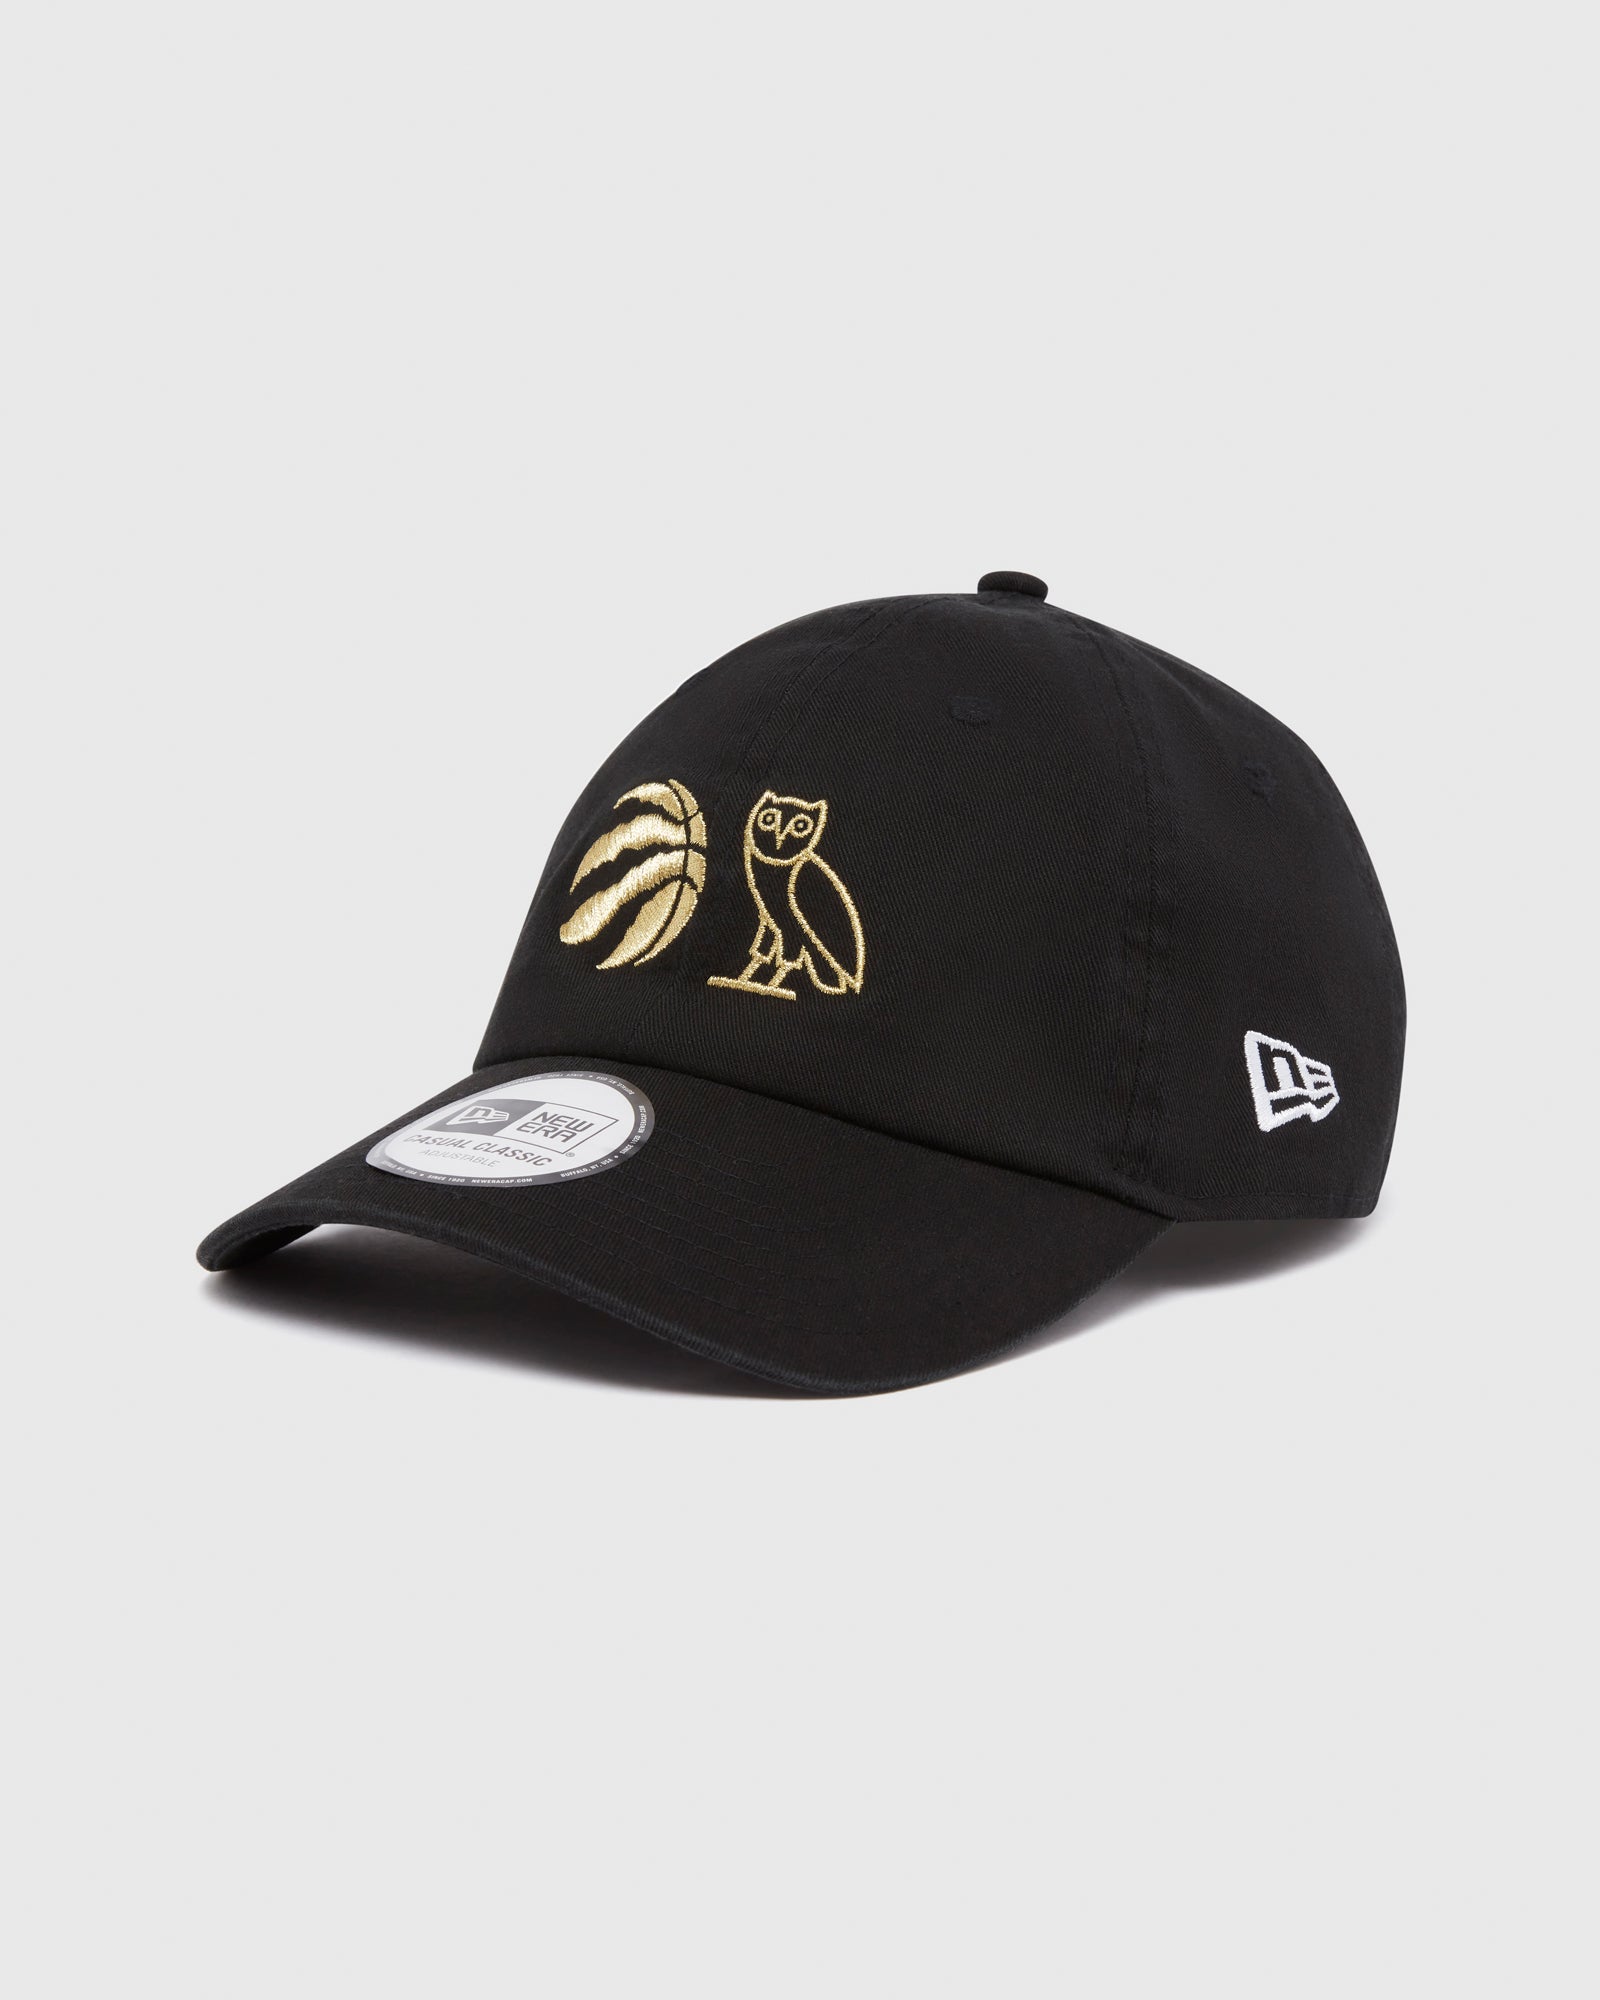 ovo raptors hat for sale